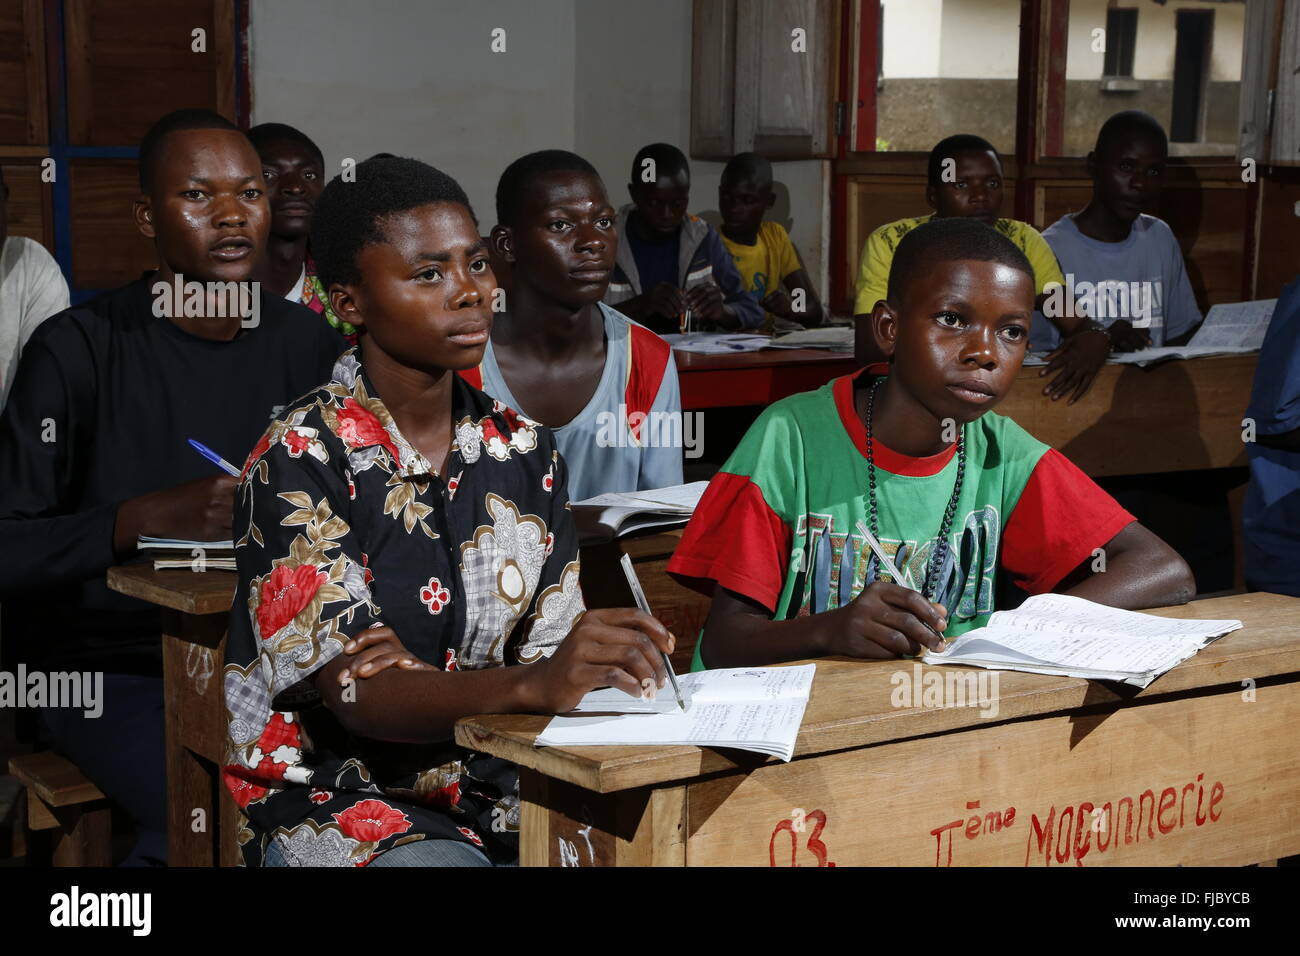 Les apprentis, les étudiants à l'école 24, la menuiserie et l'atelier de menuiserie, Matamba-Solo, province de Bandundu, République du Congo Banque D'Images